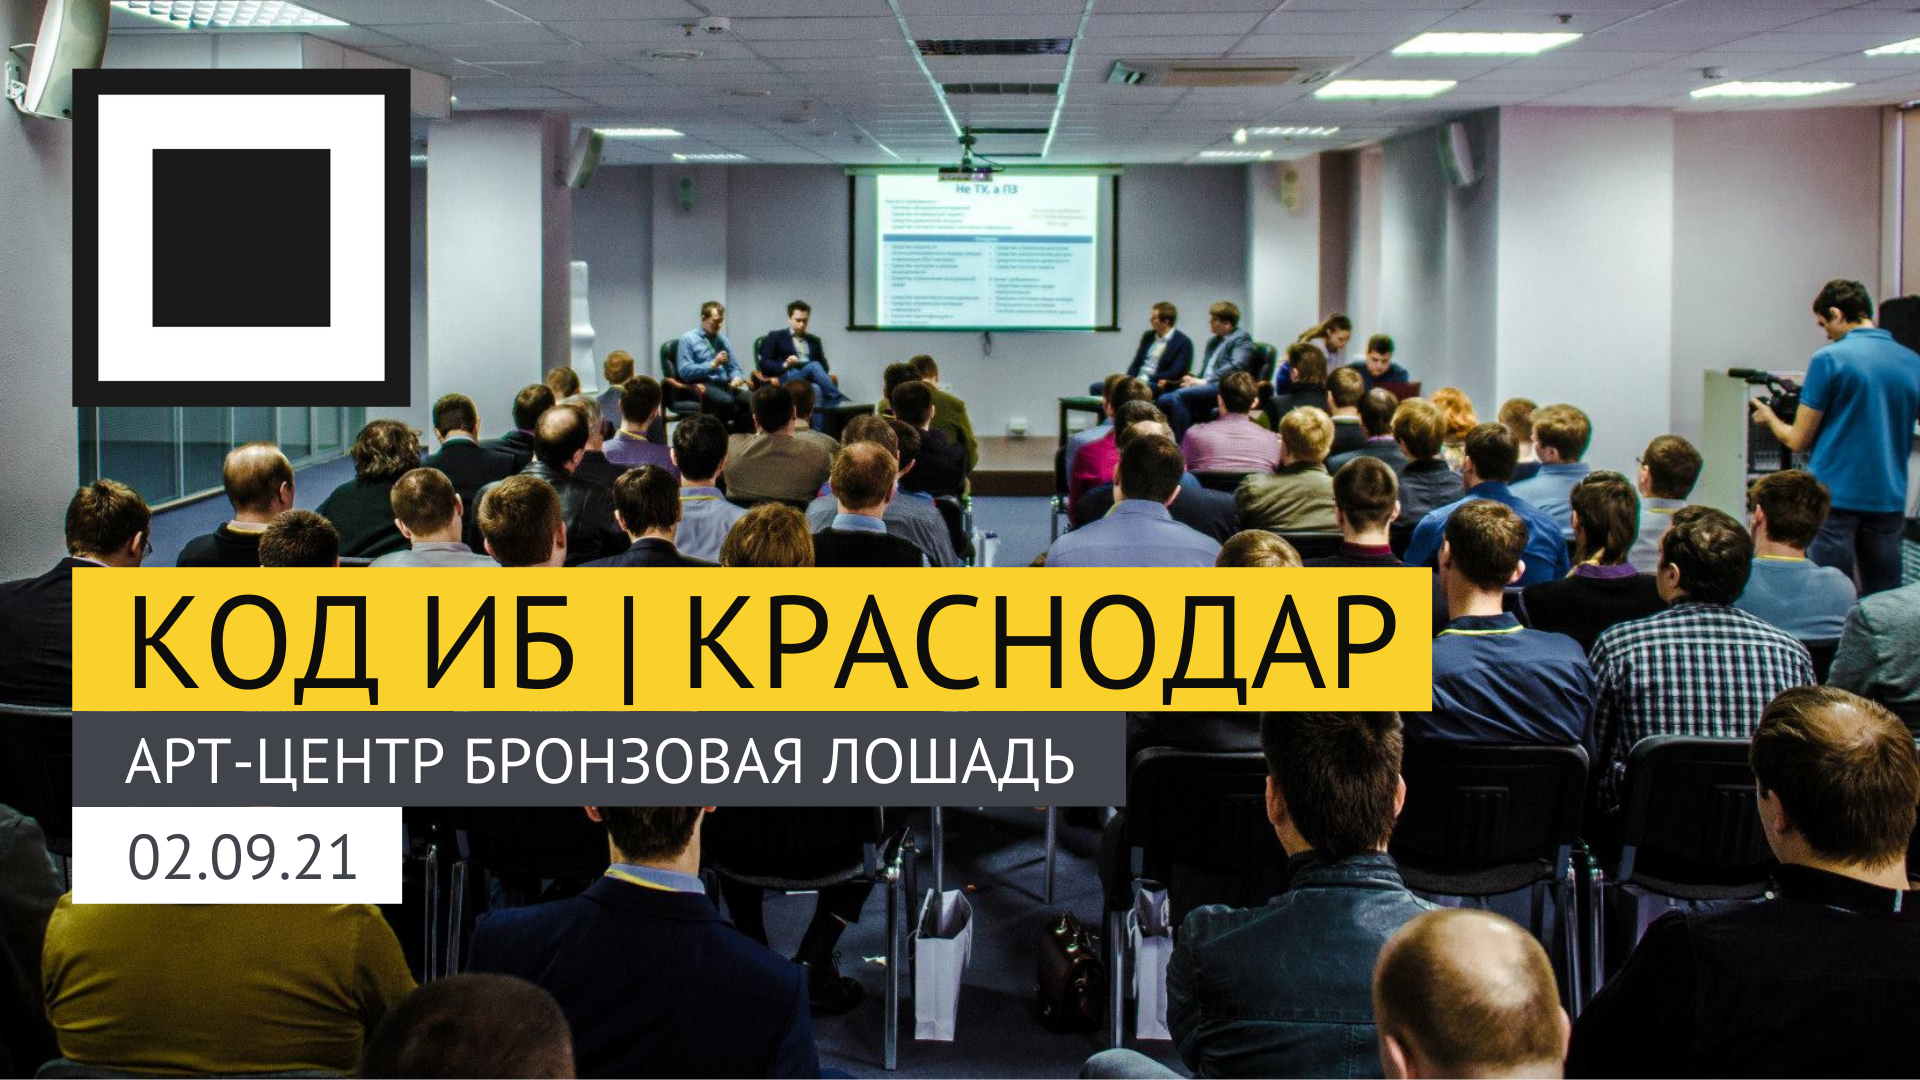 Конференция Код ИБ вновь приедет в Краснодар